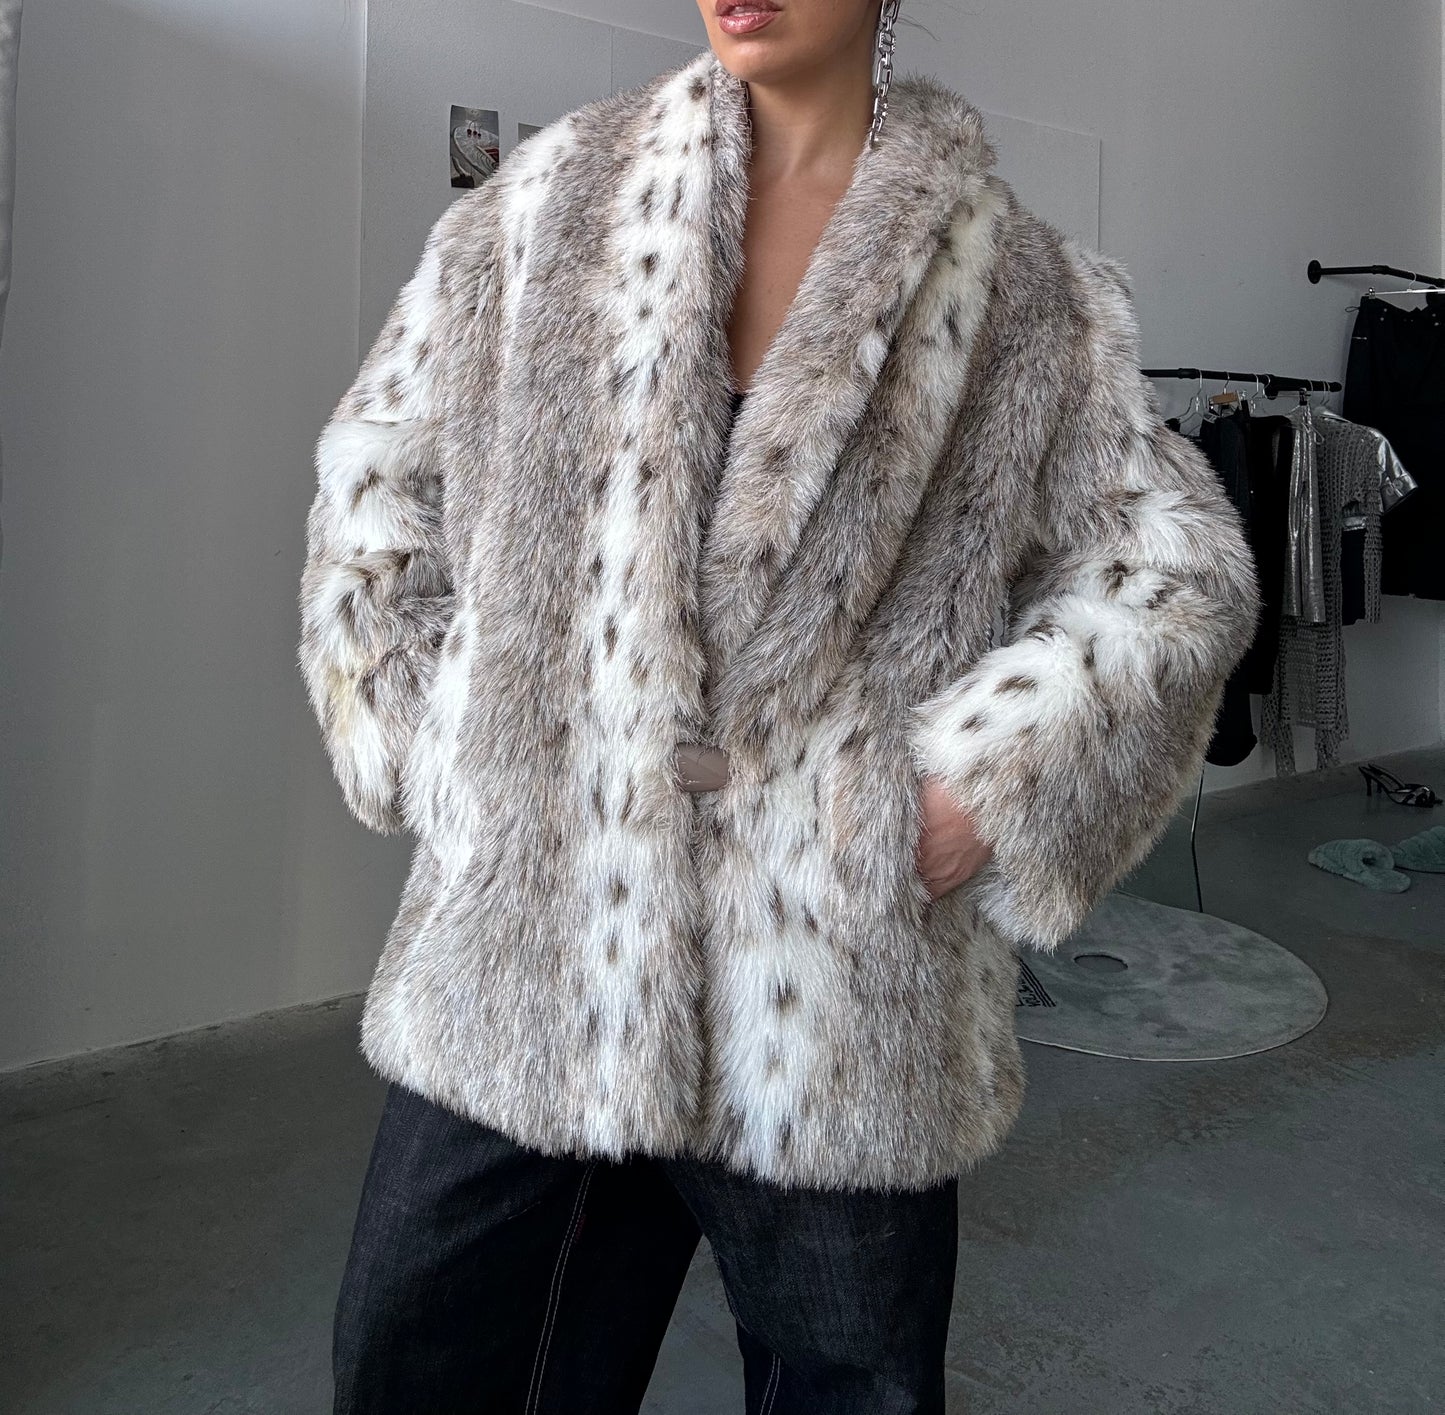 Faux Fur Leopard Coat